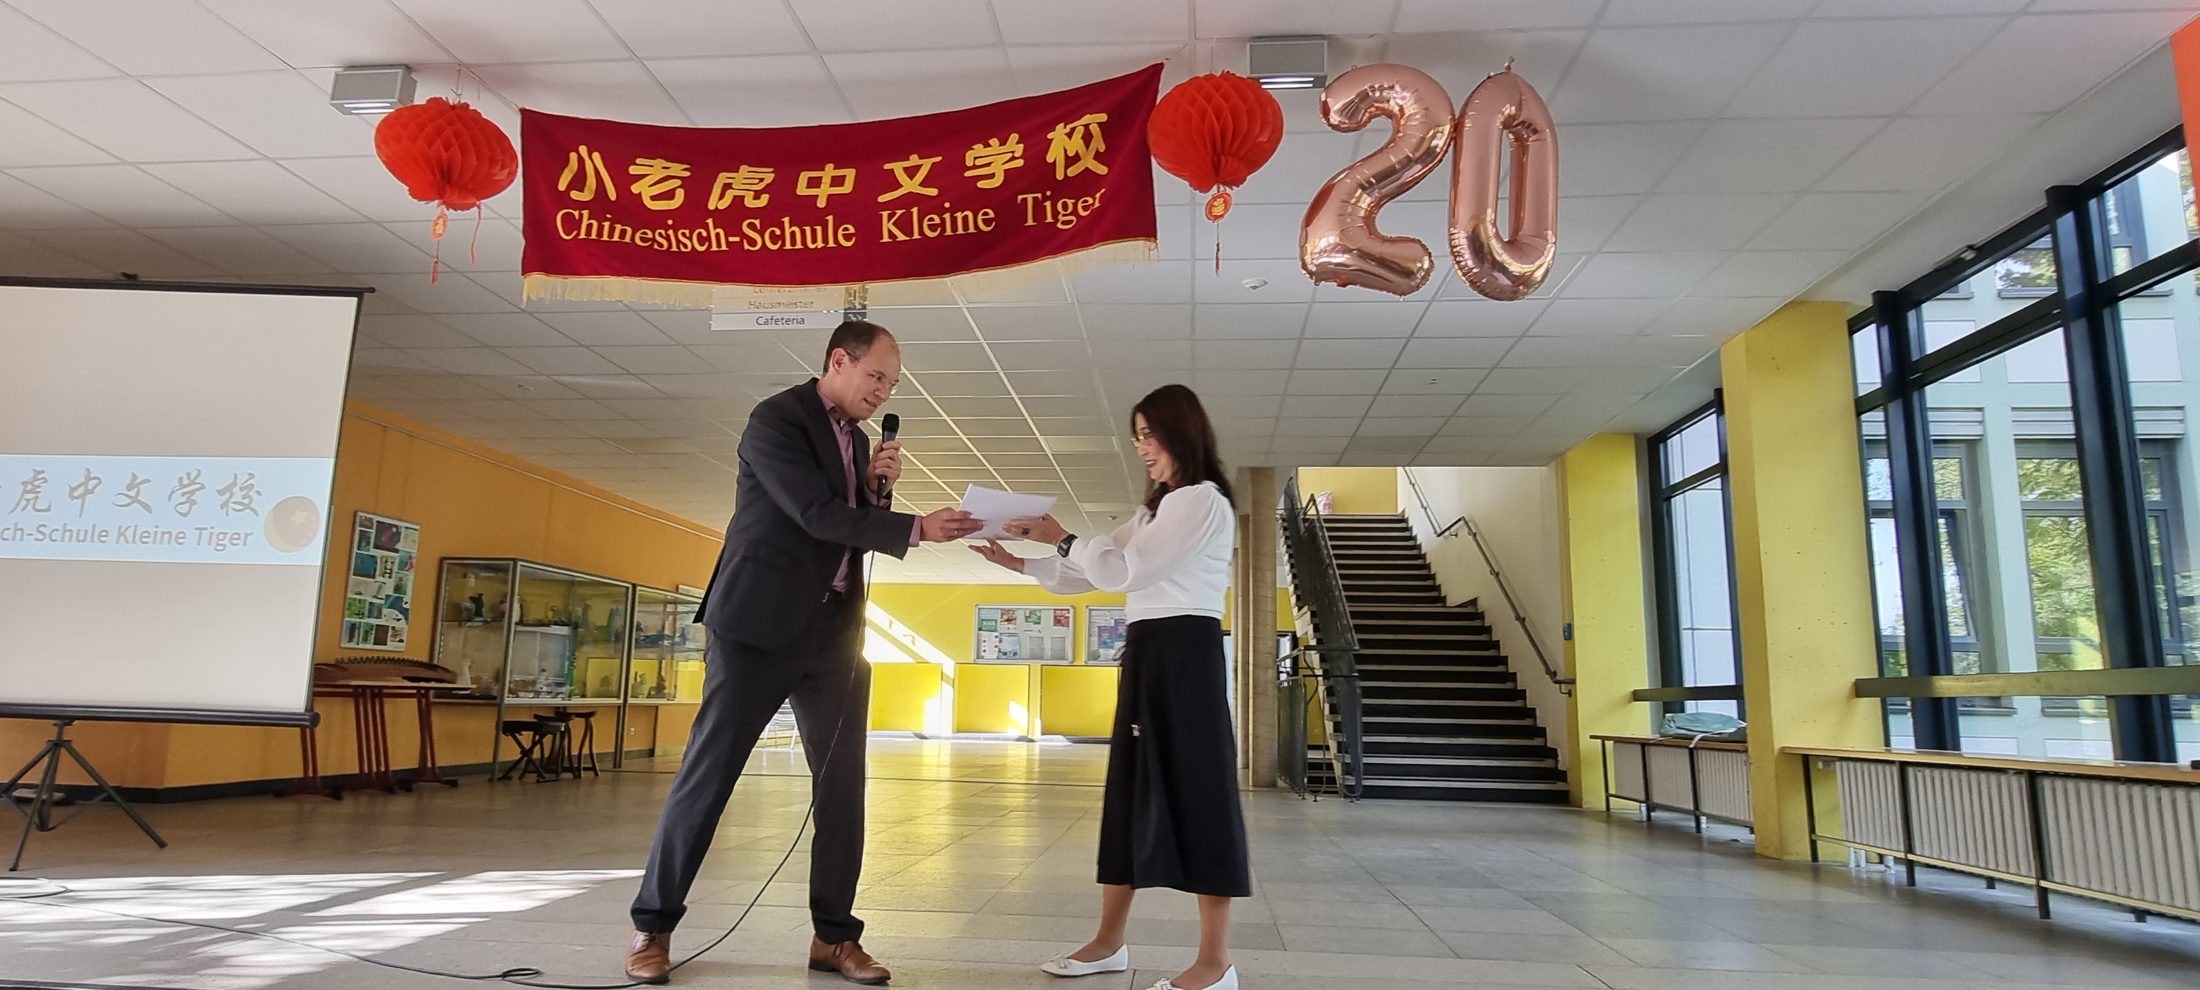 Stadtrat Dr. Tobias Pollmann überreicht Sashuang Li, Schulleiterin Kleine Tiger, Glückwünsche aus Braunschweigs Partnerstadt Zhuhai. (Wird bei Klick vergrößert)